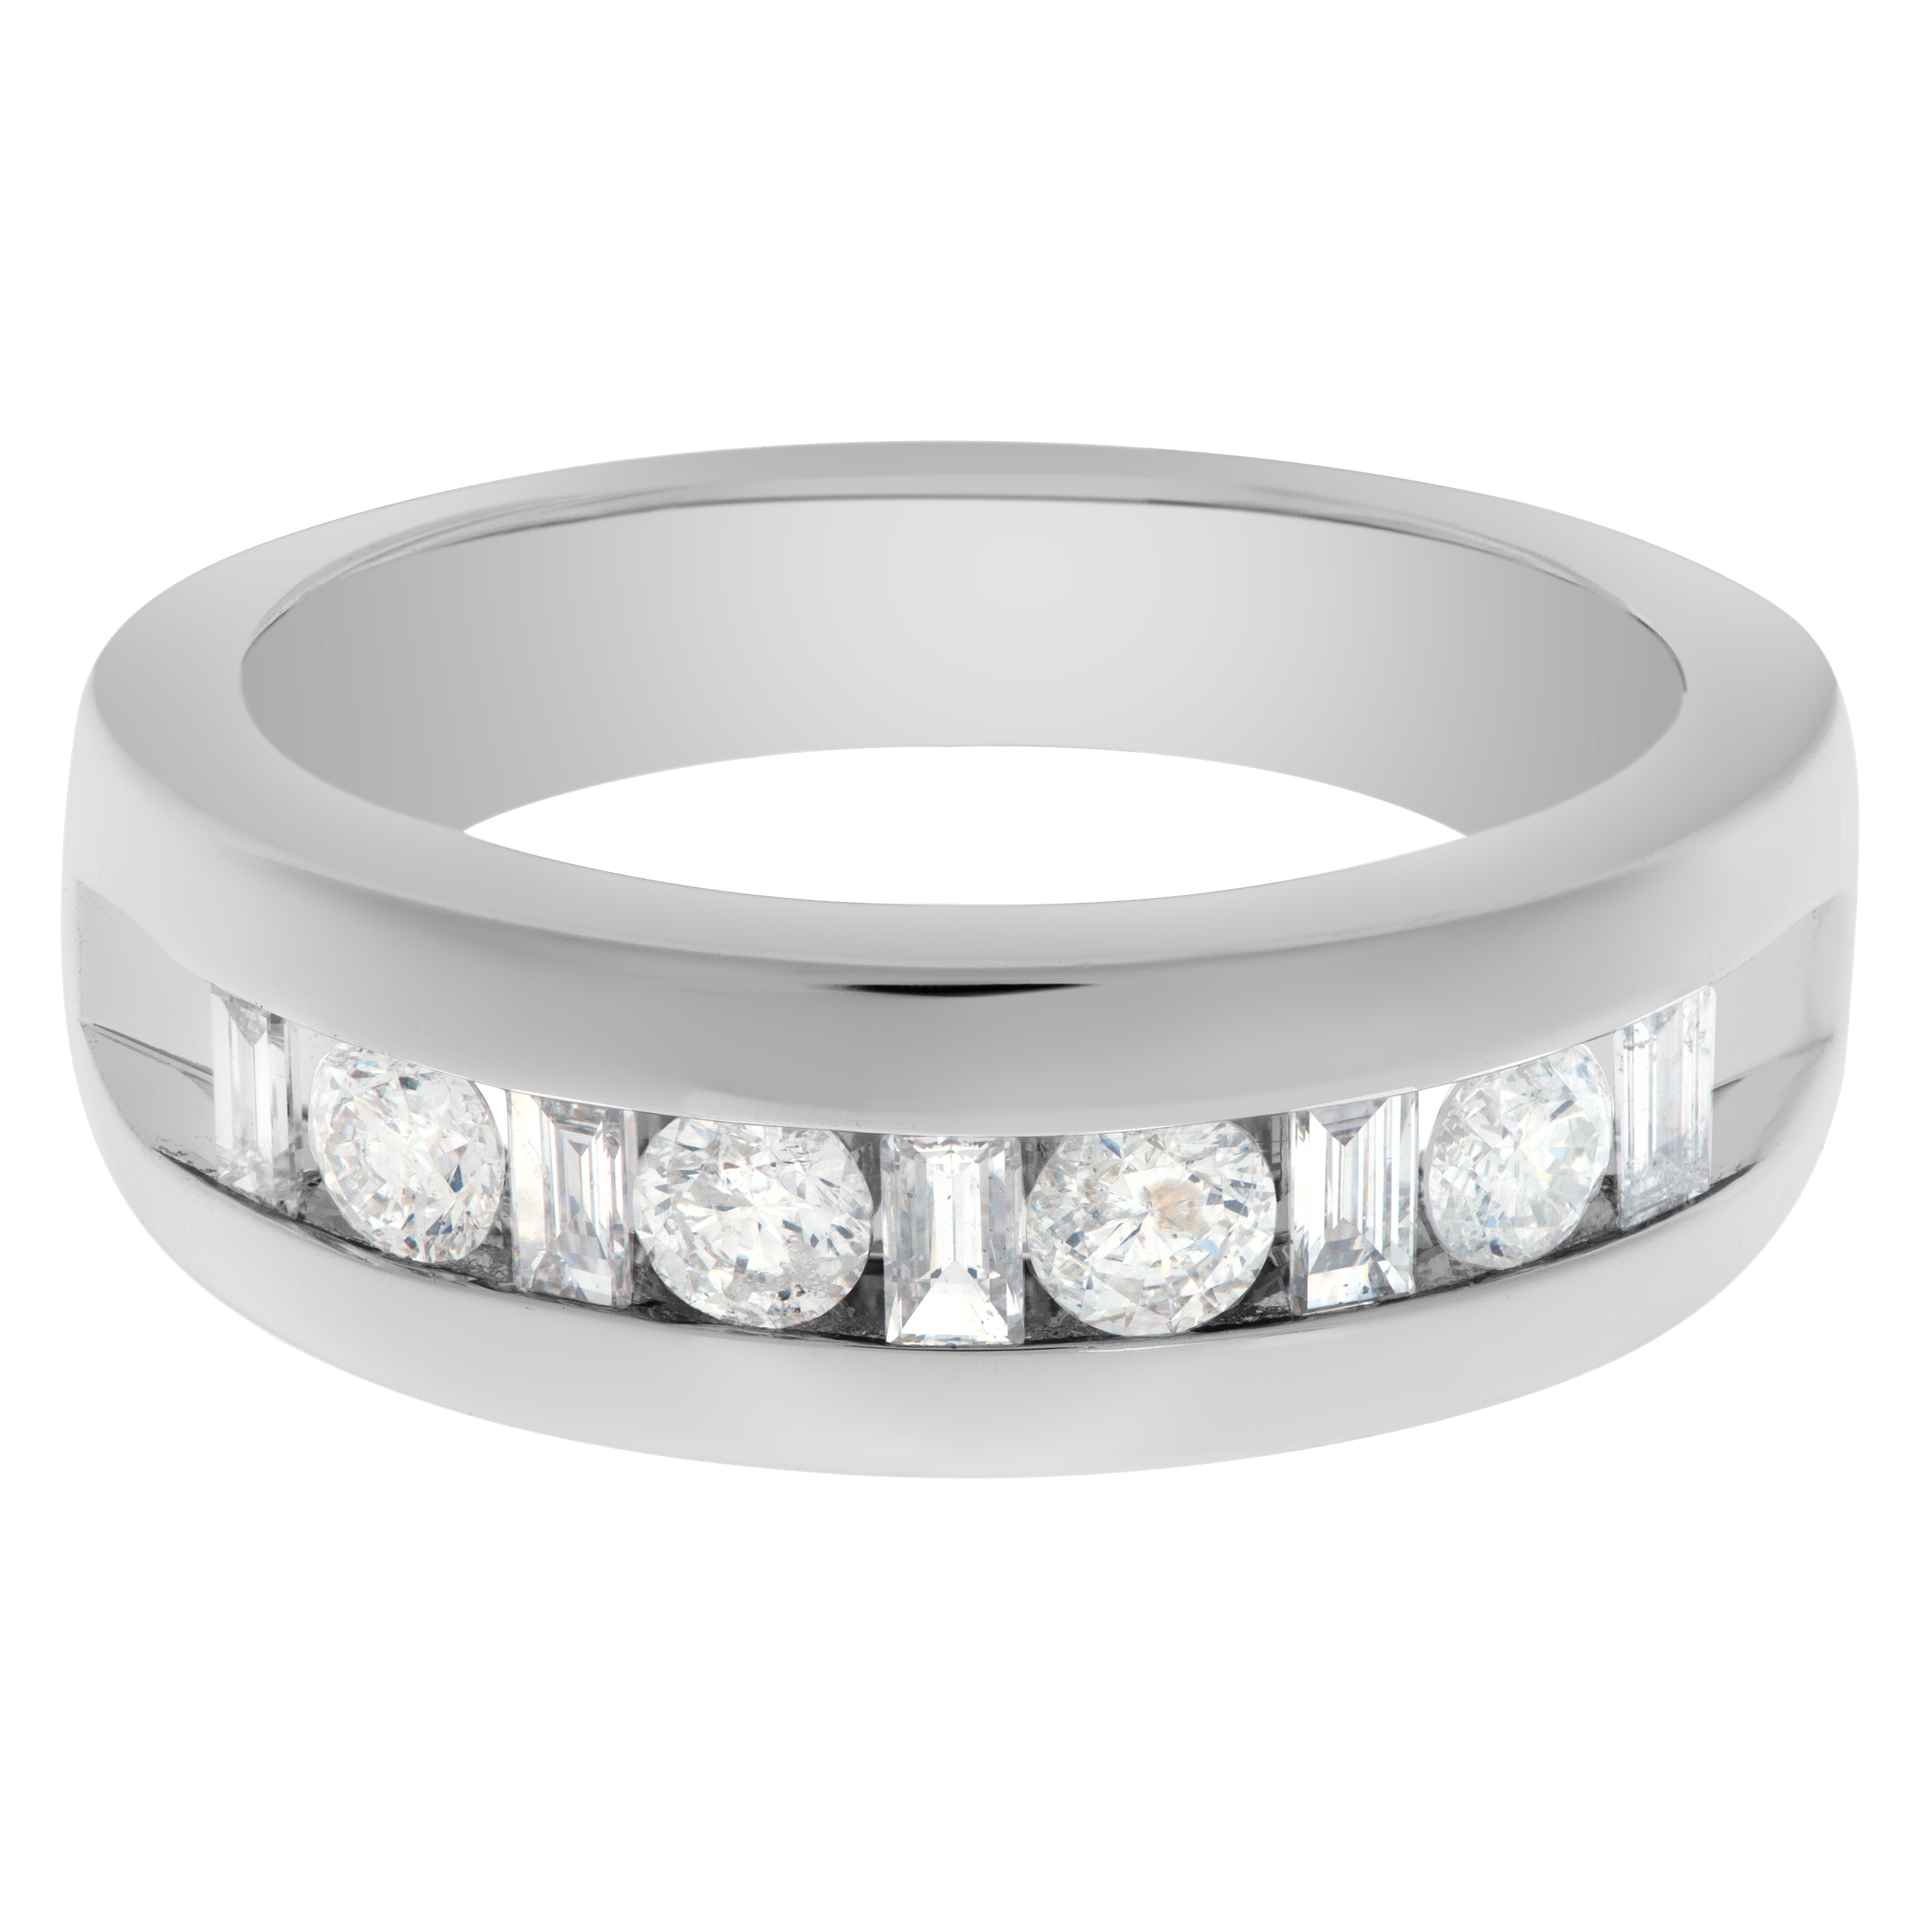 Semi eternity diamond ring in 14k white gold